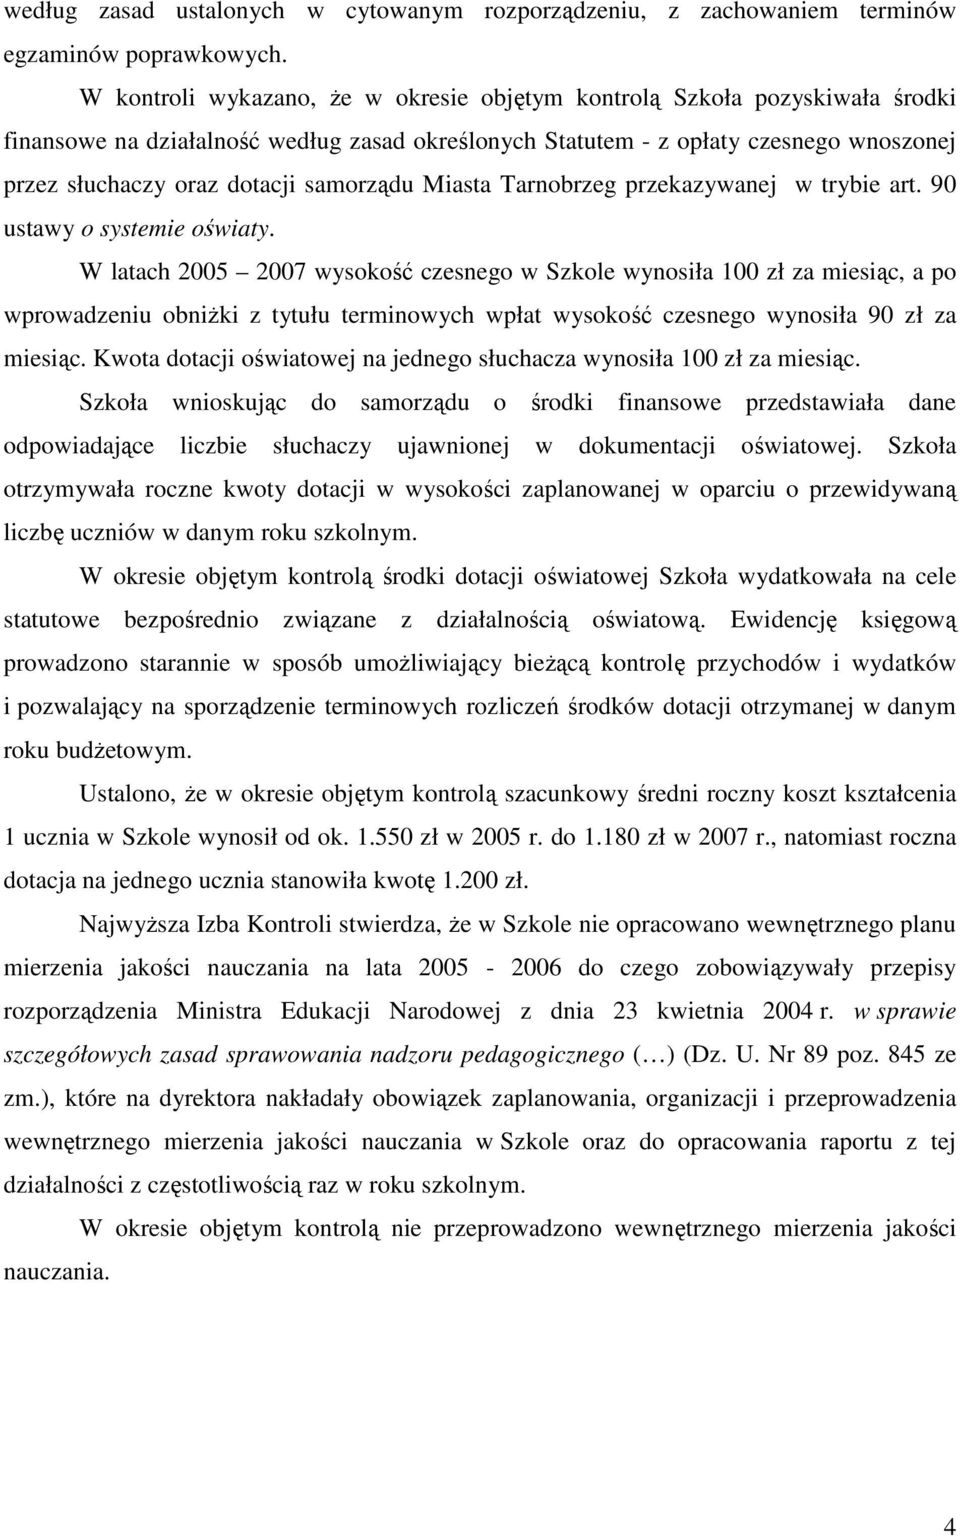 samorządu Miasta Tarnobrzeg przekazywanej w trybie art. 90 ustawy o systemie oświaty.